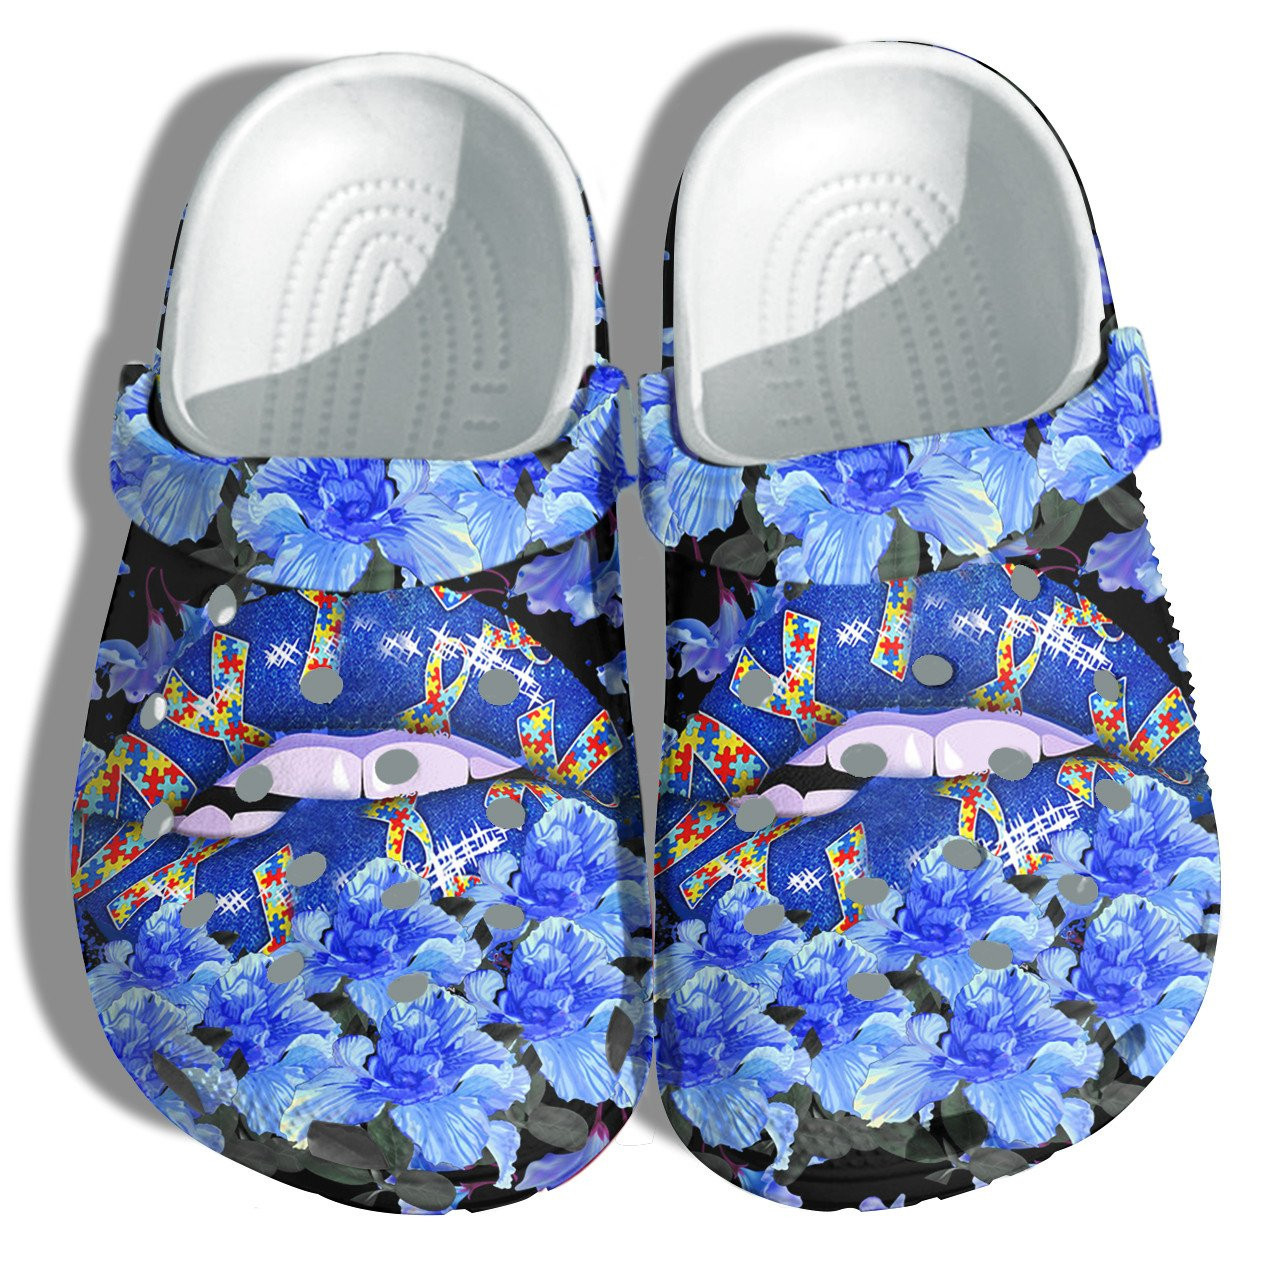 Blue Lip Autism Puzzel Style Crocs Shoes - In April Wear Blue Cute Crocs Shoes Croc Clogs Gifts For Women Girl